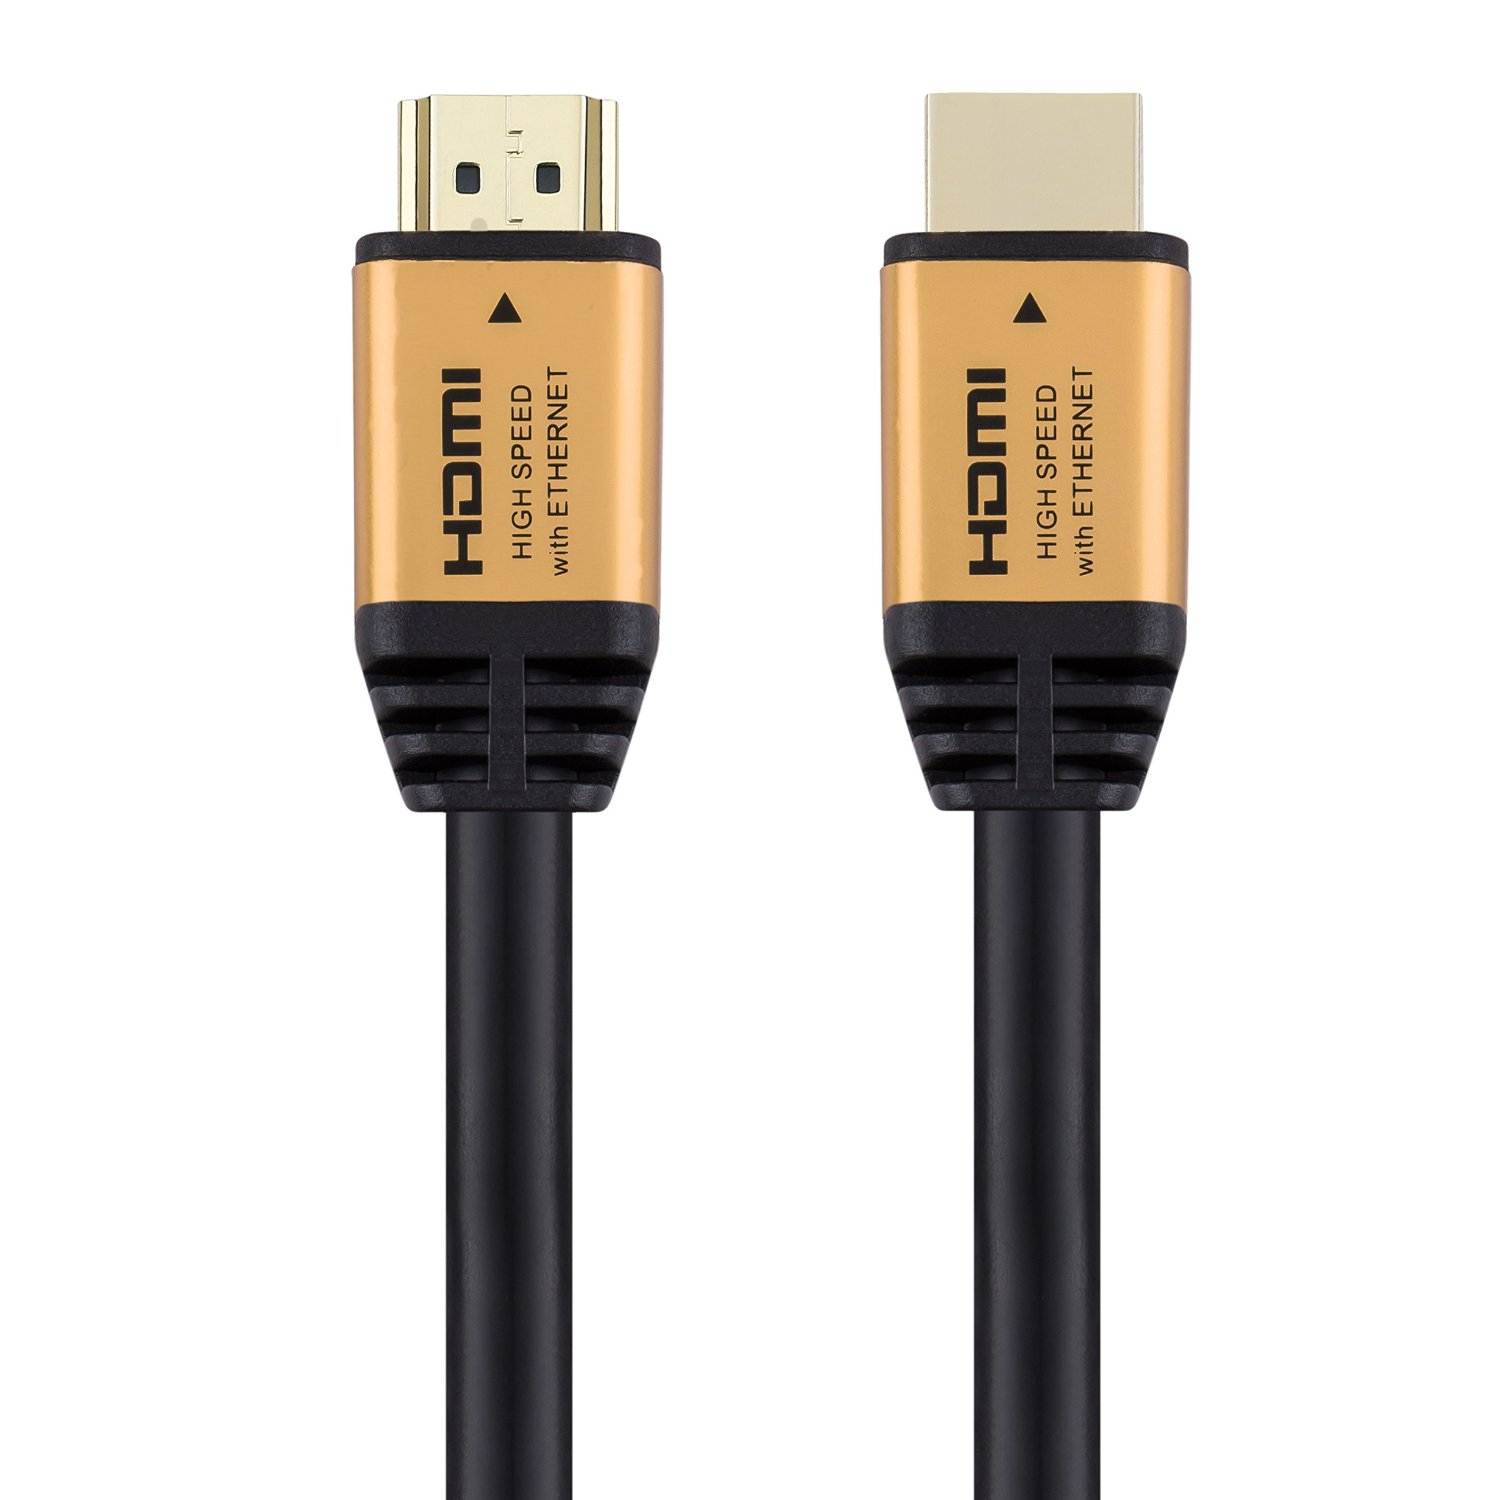 HDMI Cable - HDM013 Copper